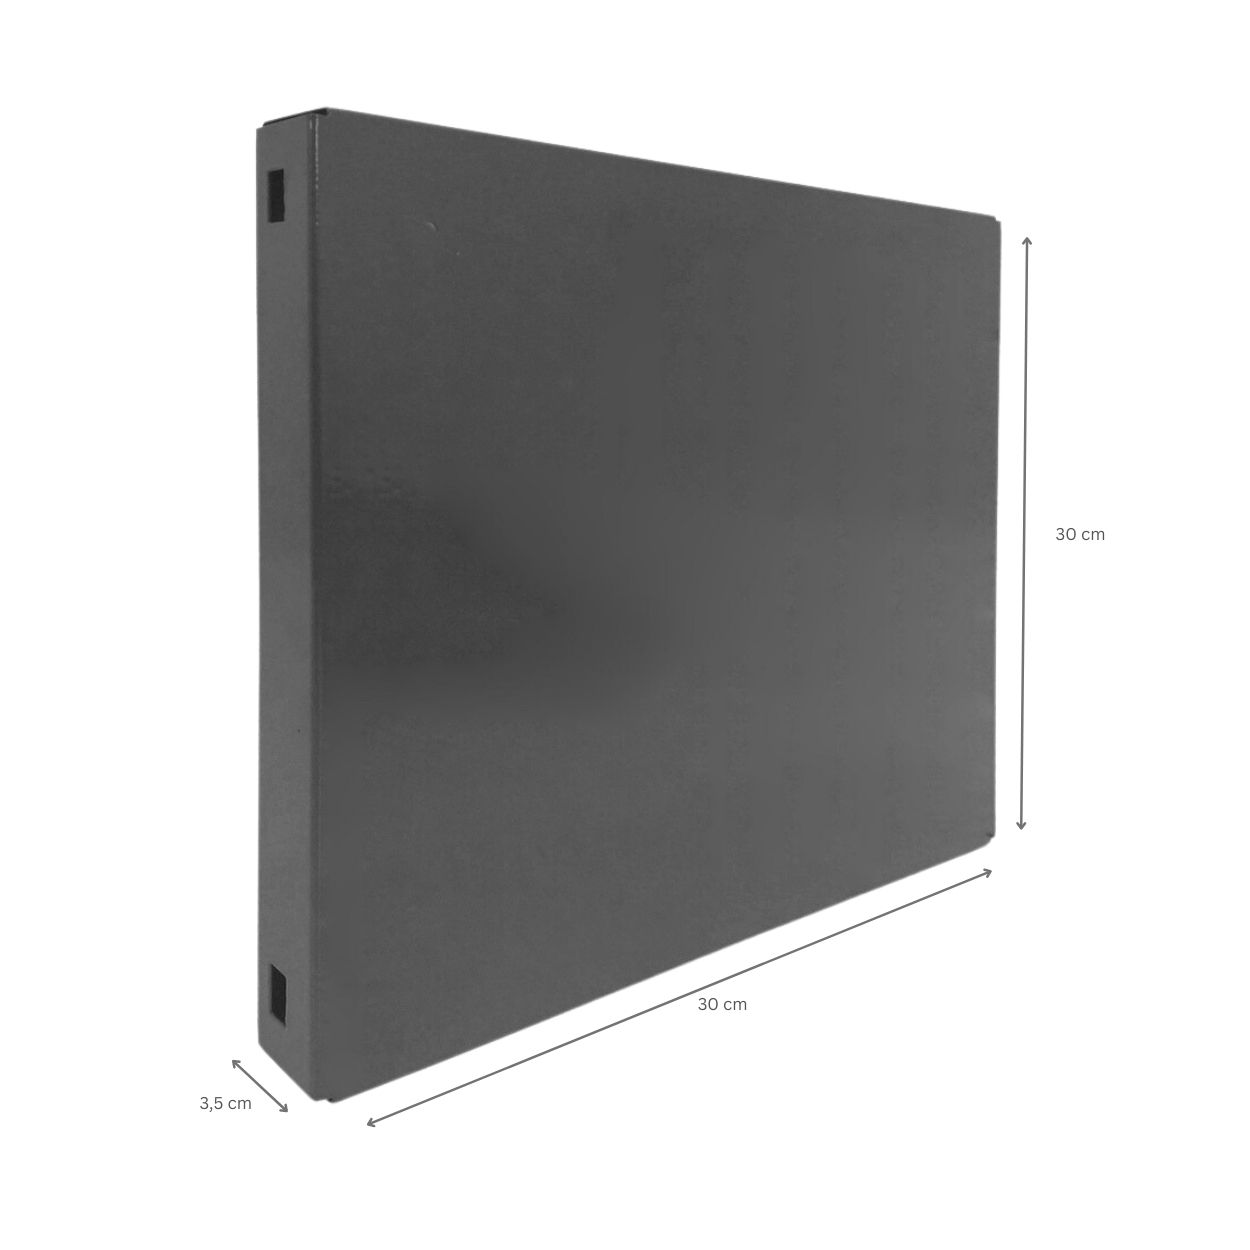 Doppelpack 2x Memoboard aus Stahl geschlossen | HxBxT 30x30x3,5cm | Grau | Wandtafel Trägersystem